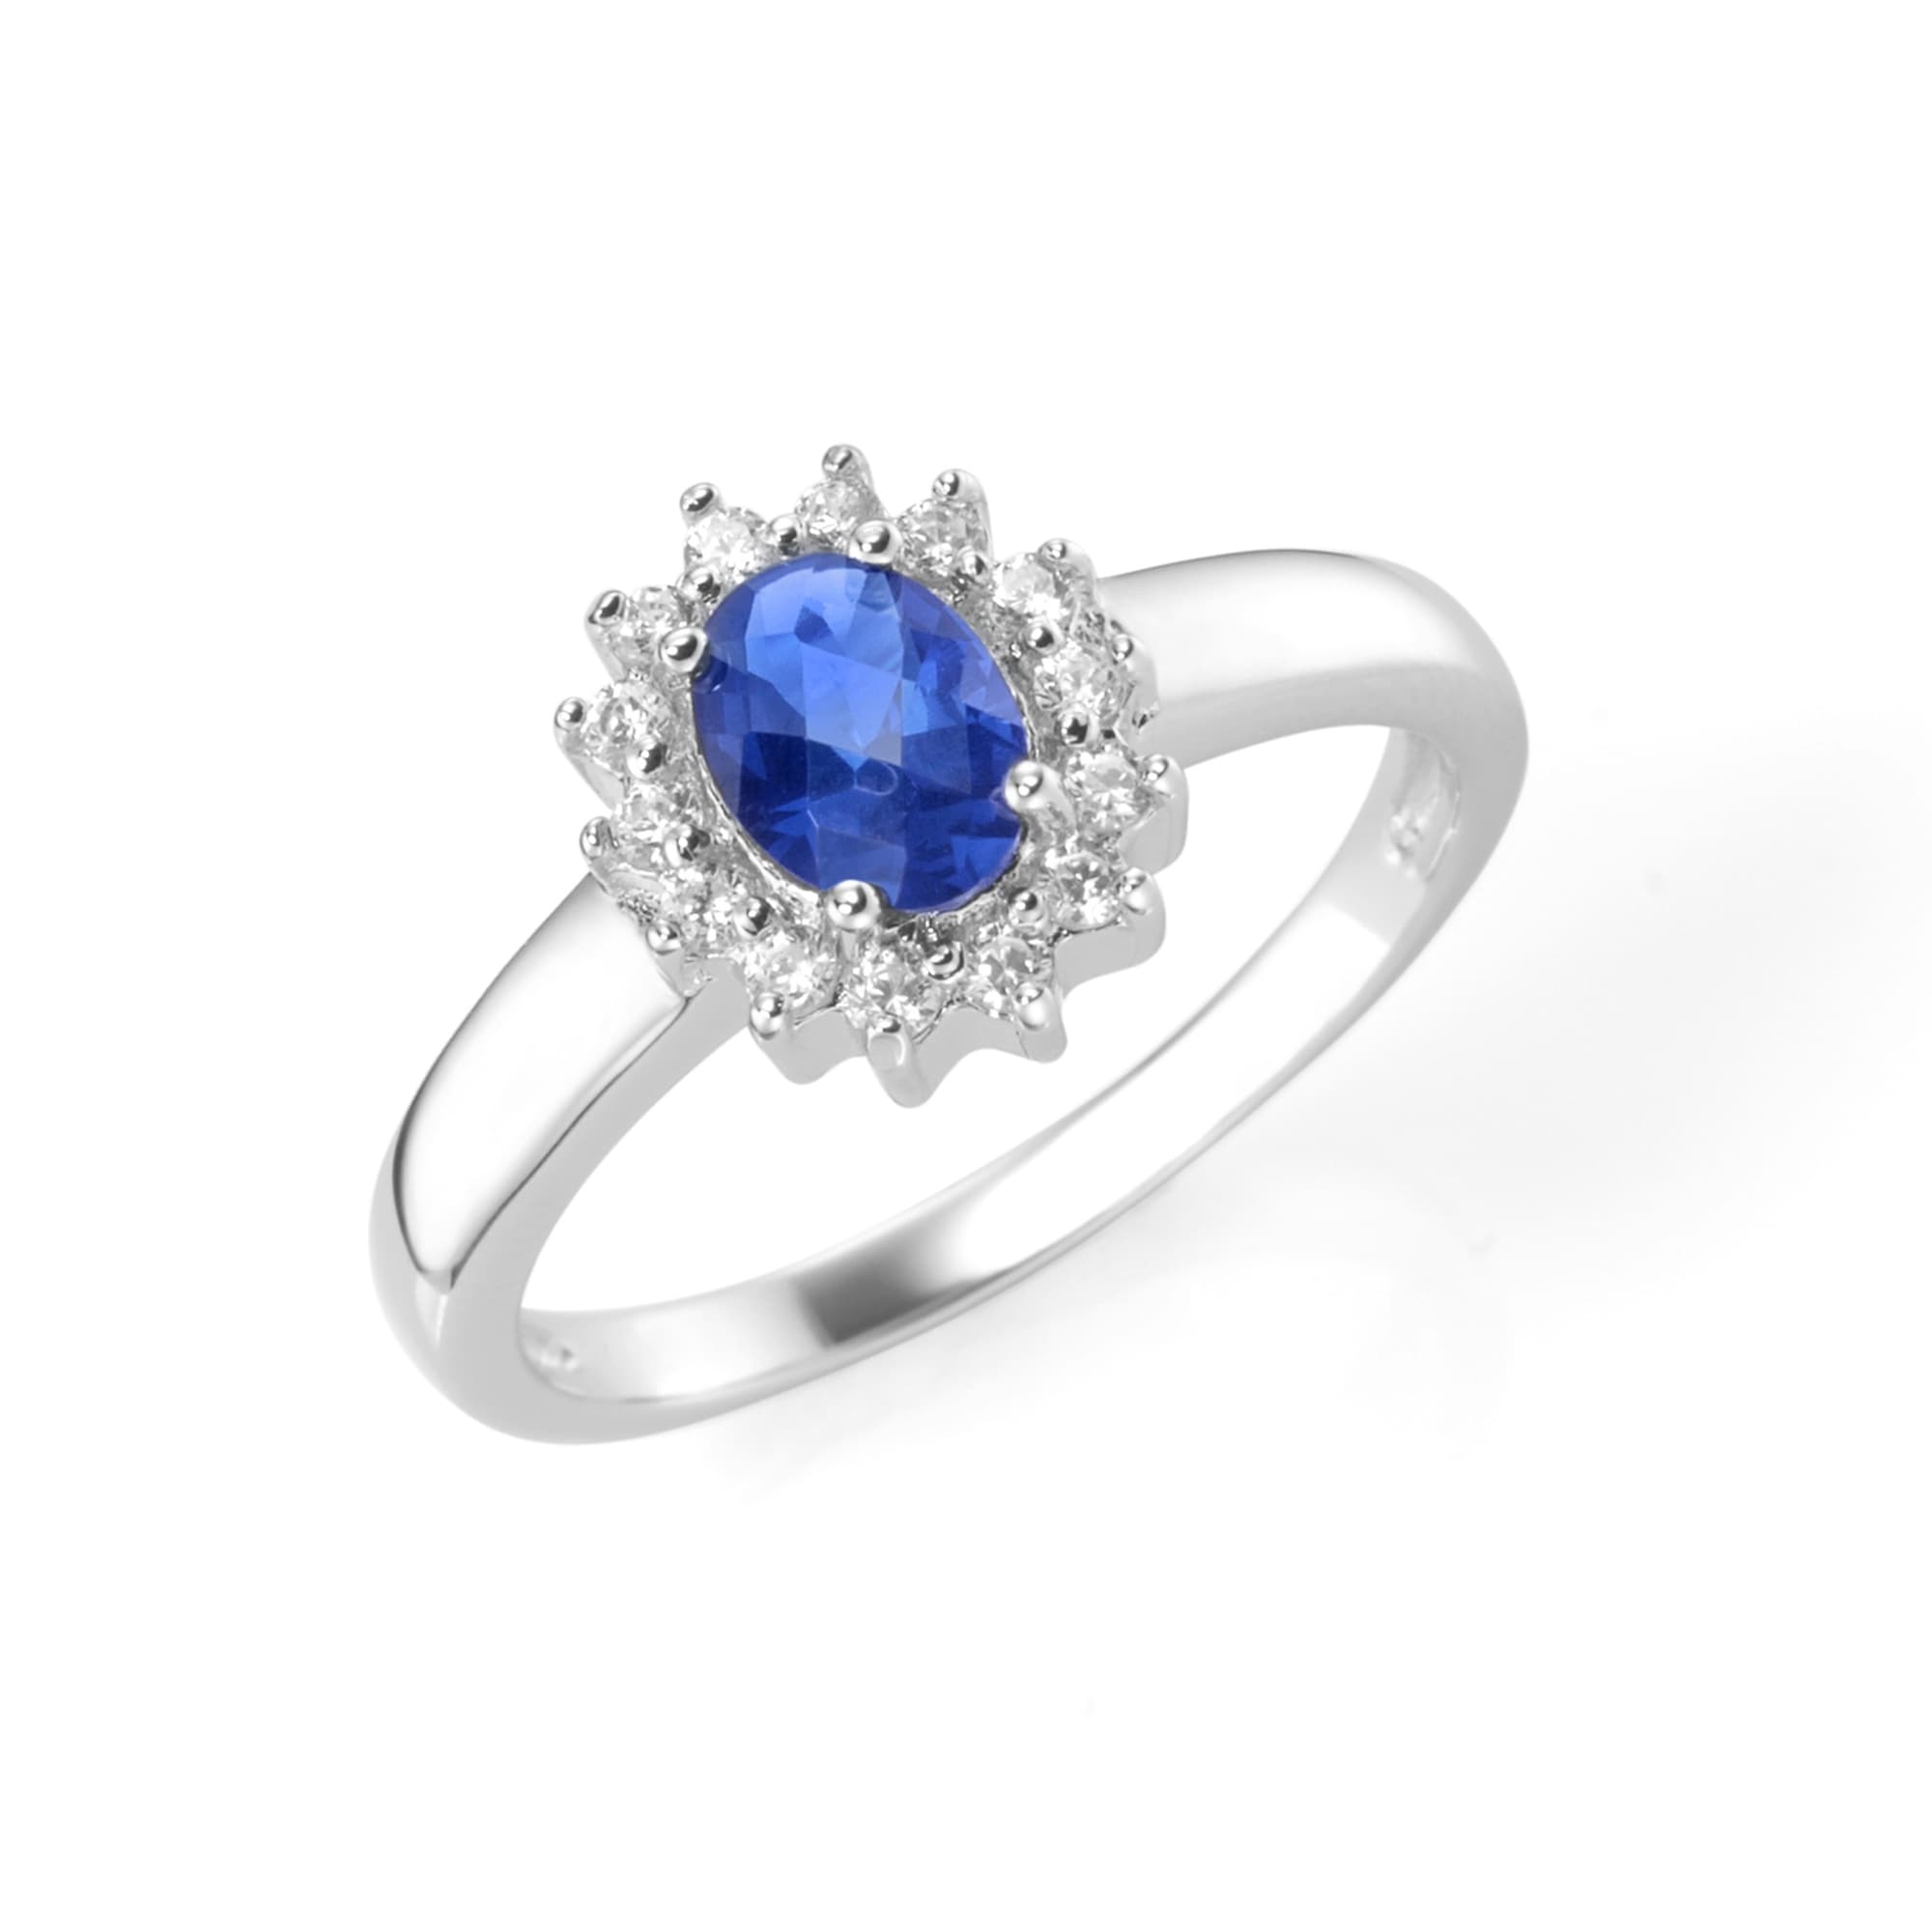 Smart Jewel Silberring »Ring zauberhaft, farbiger Stein und weiße Zirkonia, Silber 925«